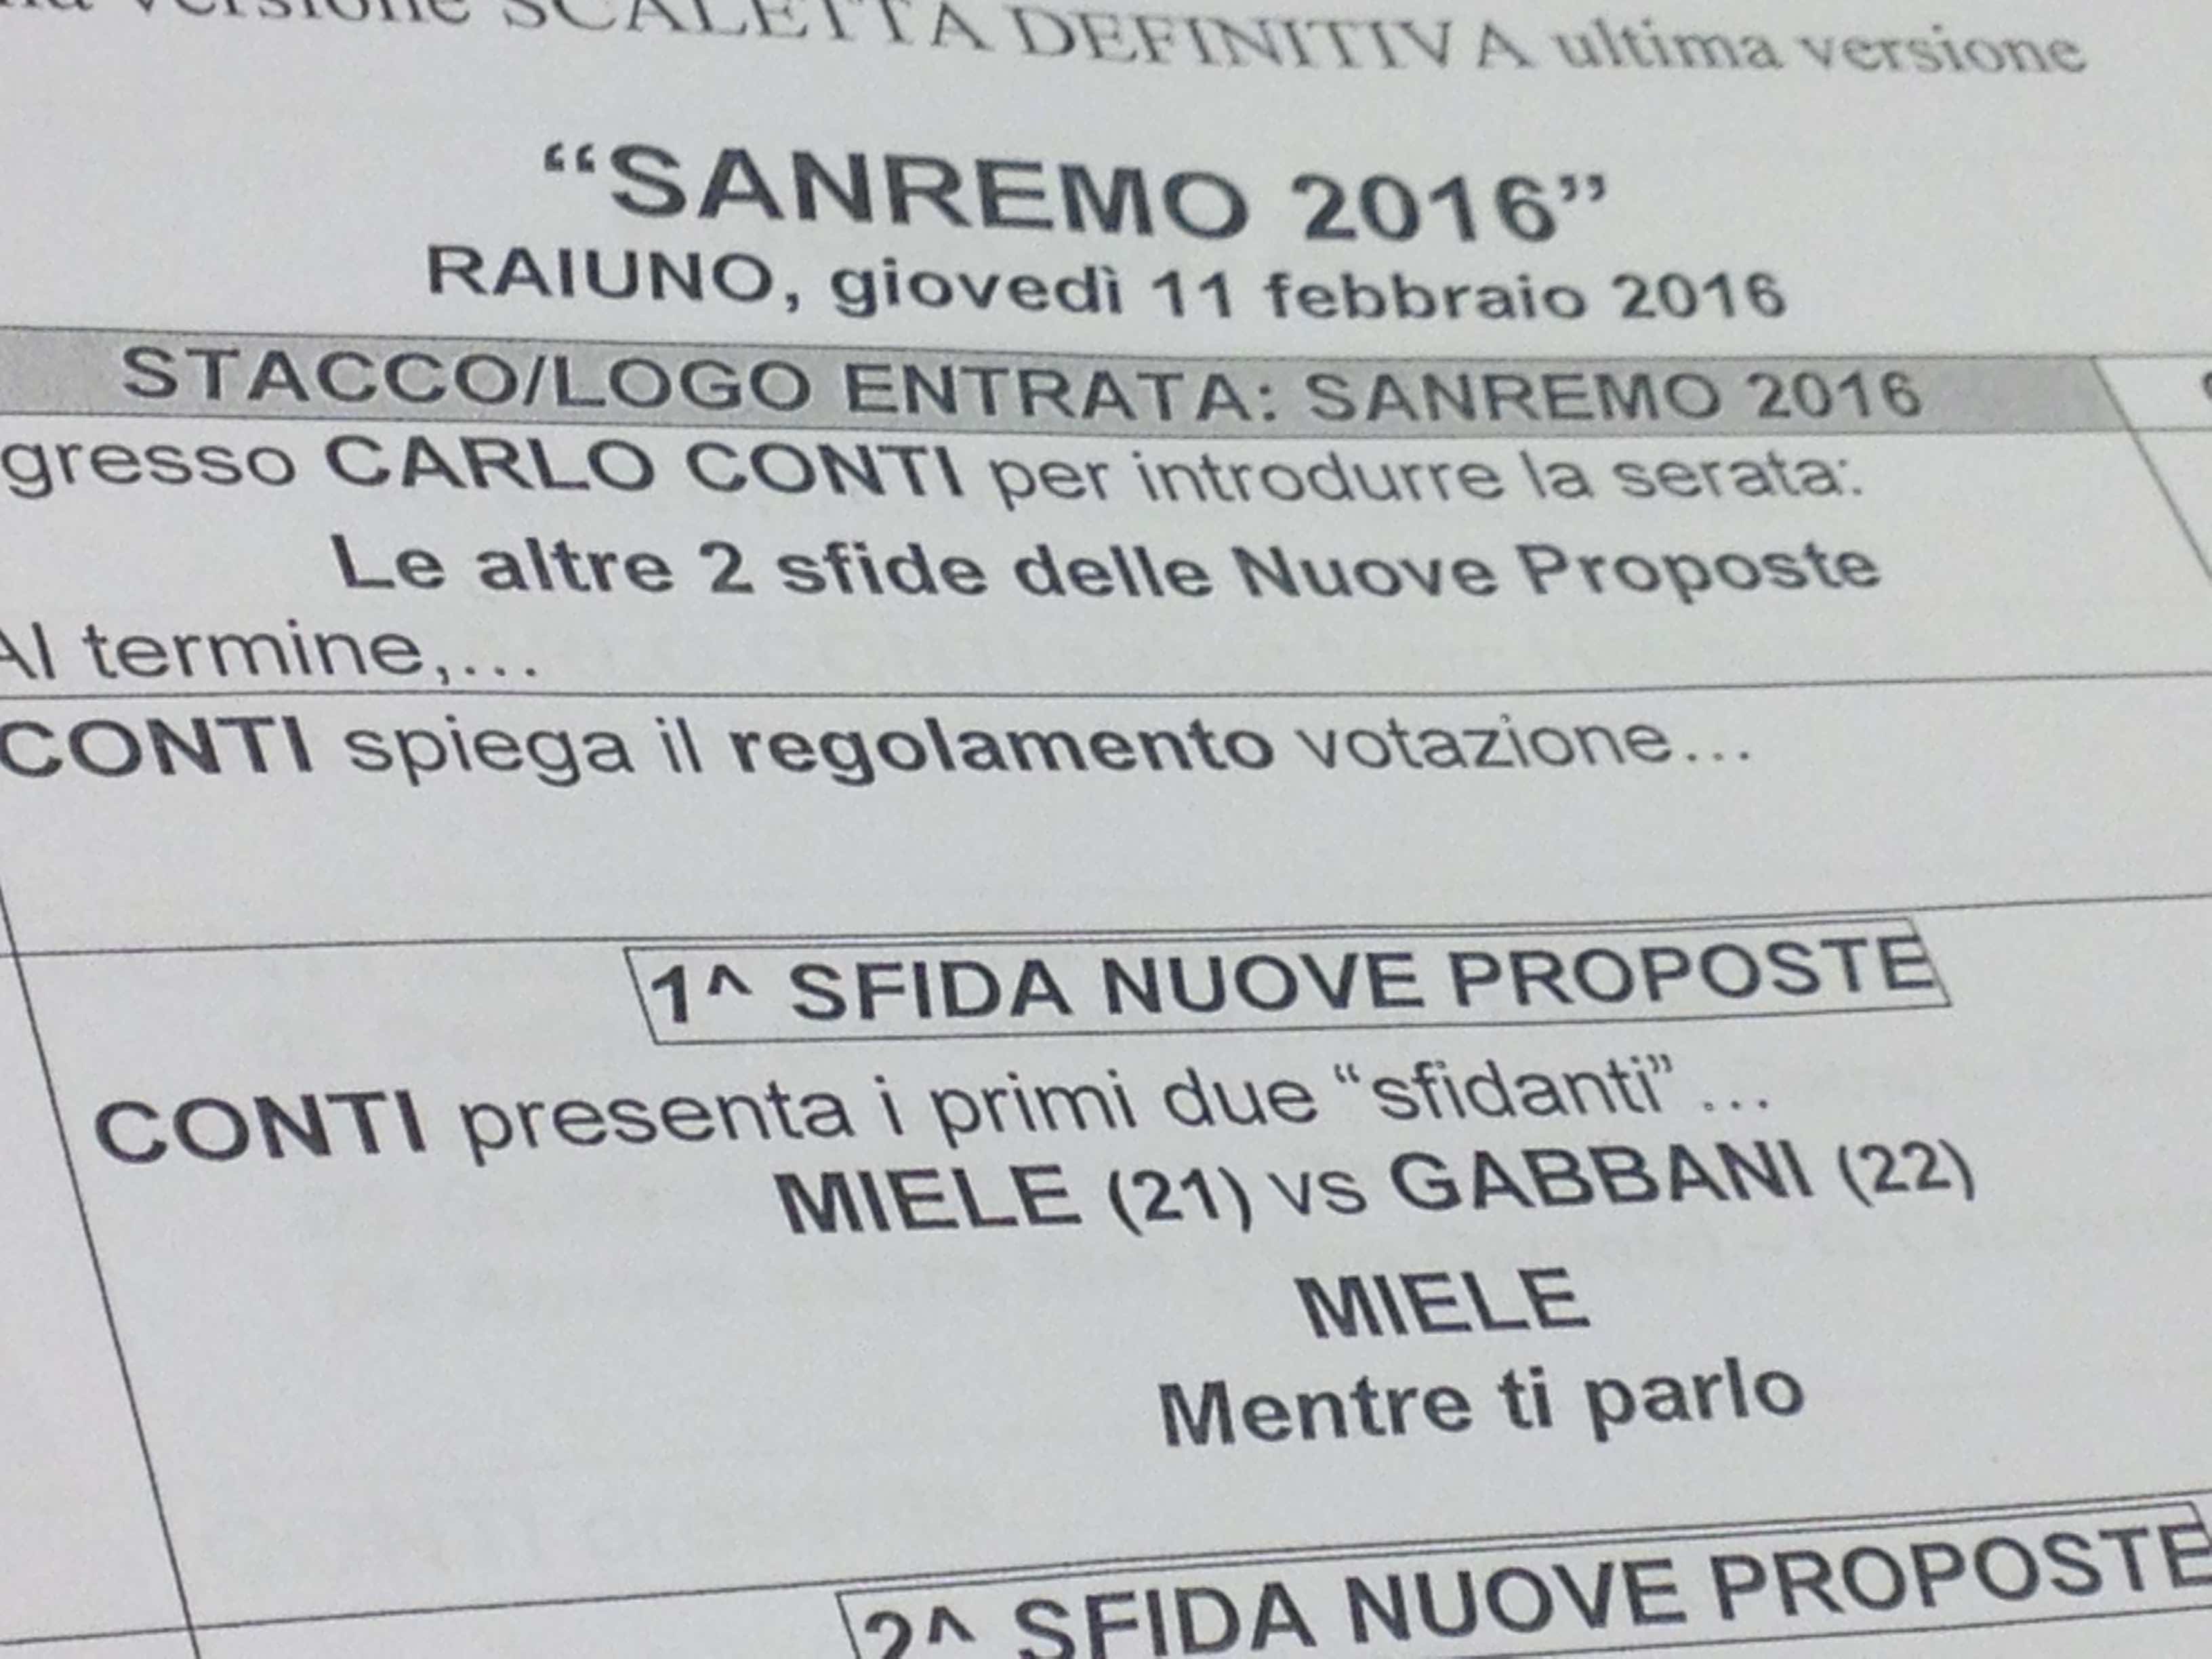 Sanremo 2016 Miele vs Gabbani